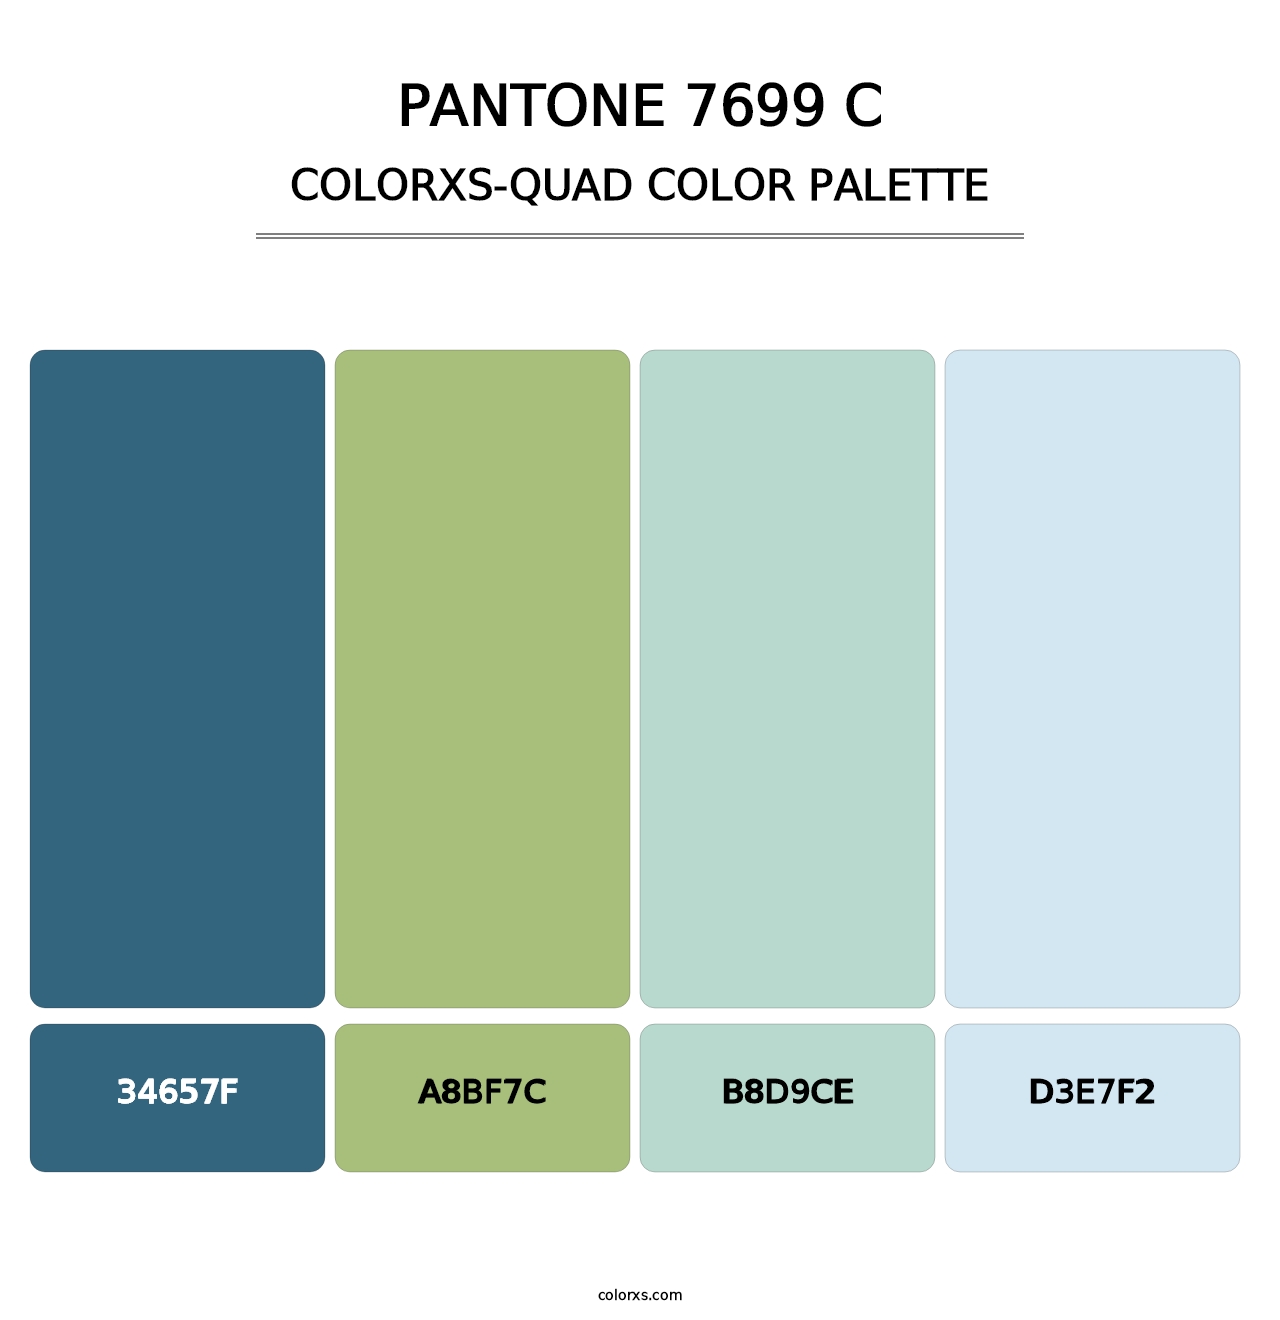 PANTONE 7699 C - Colorxs Quad Palette